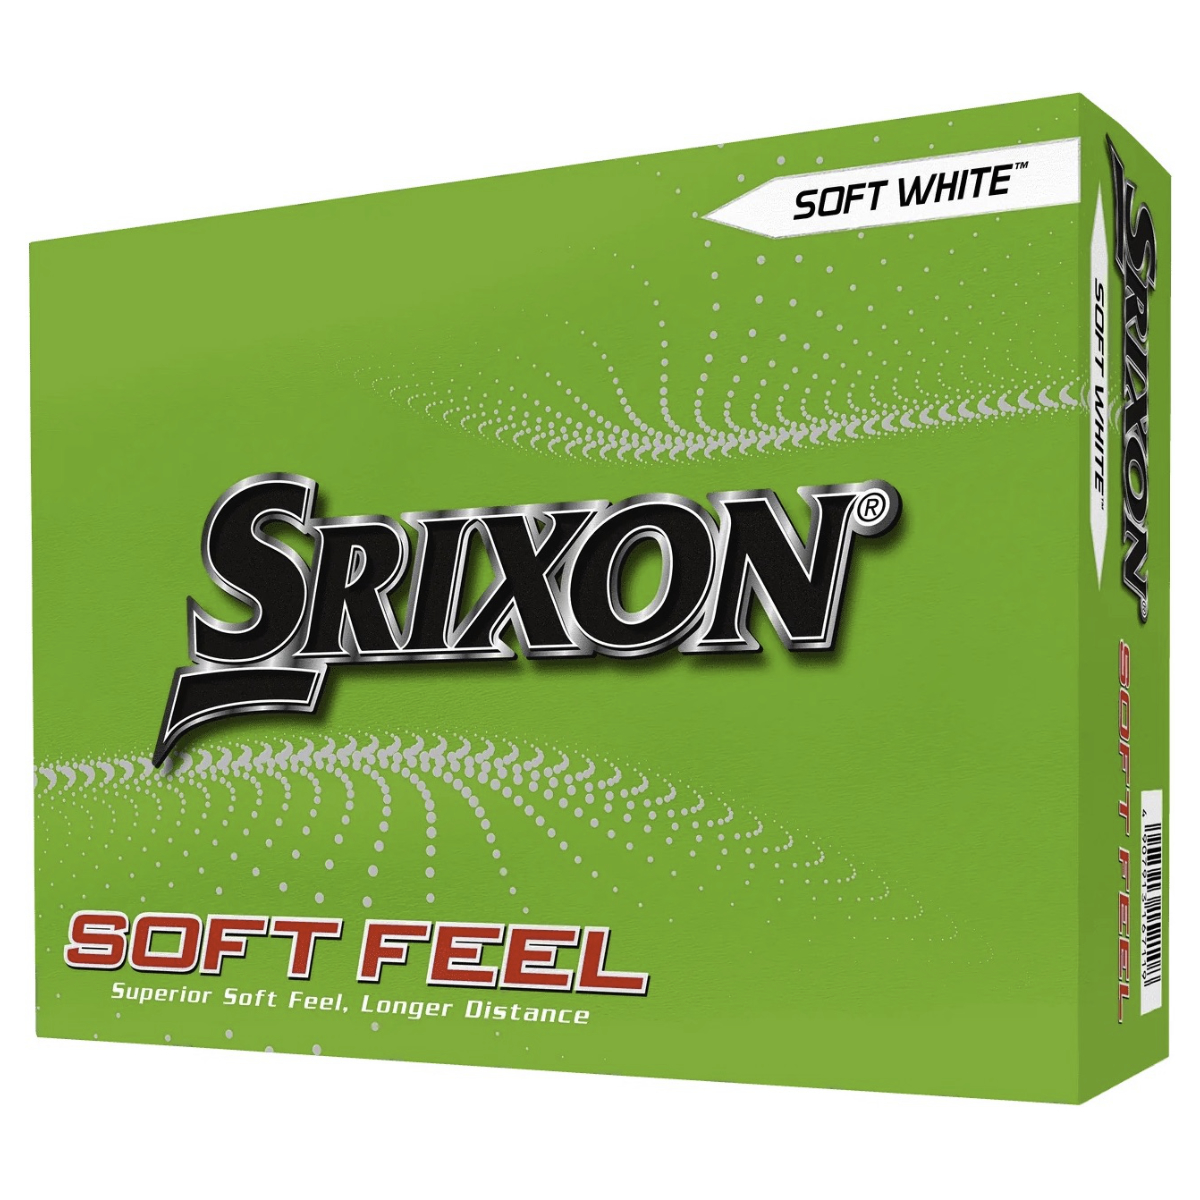 Srixon Soft Feel 23 White